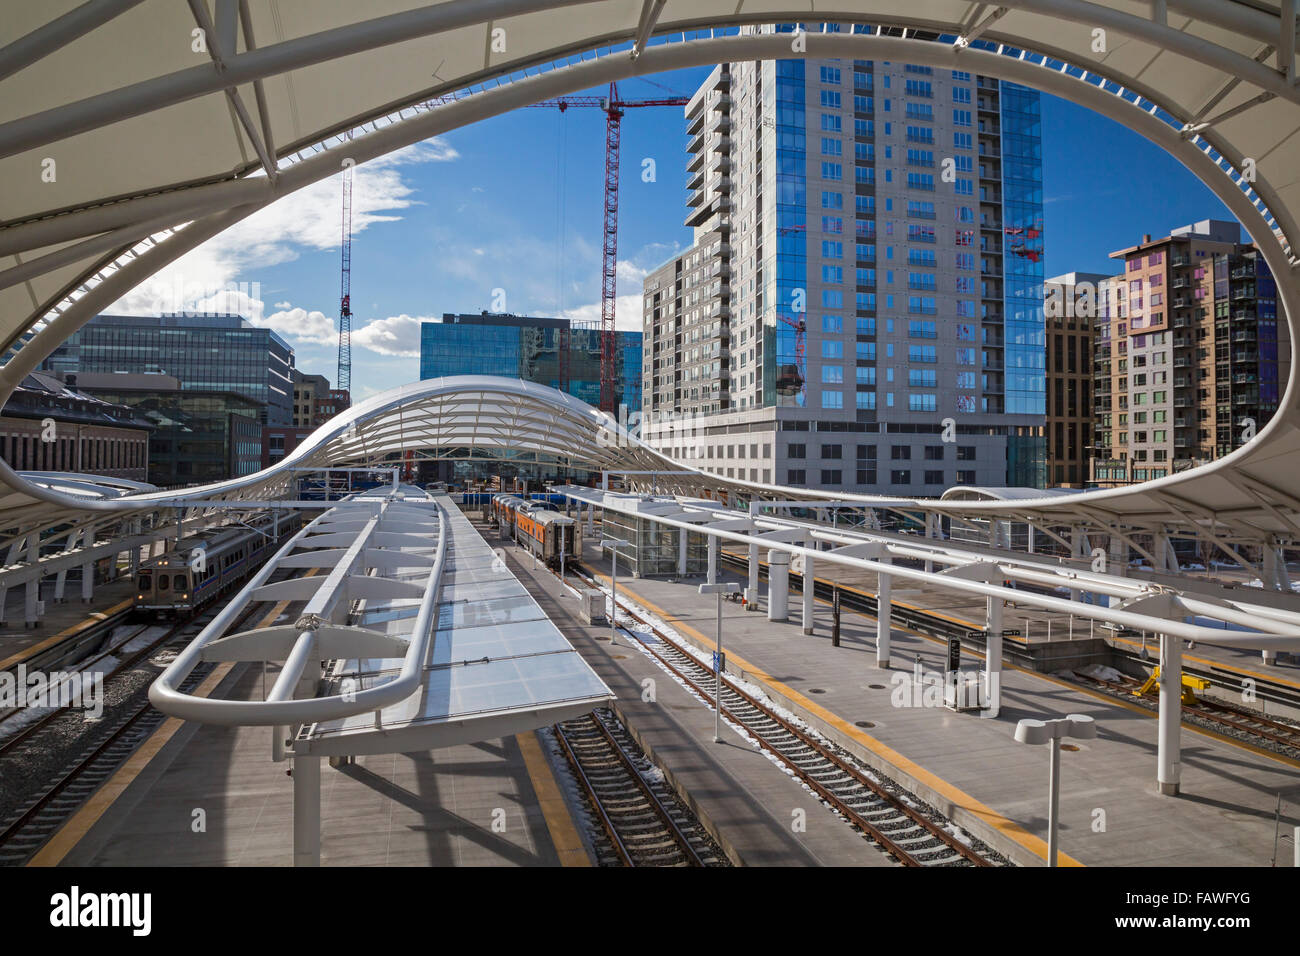 Denver, Colorado - Union Station. Stock Photo